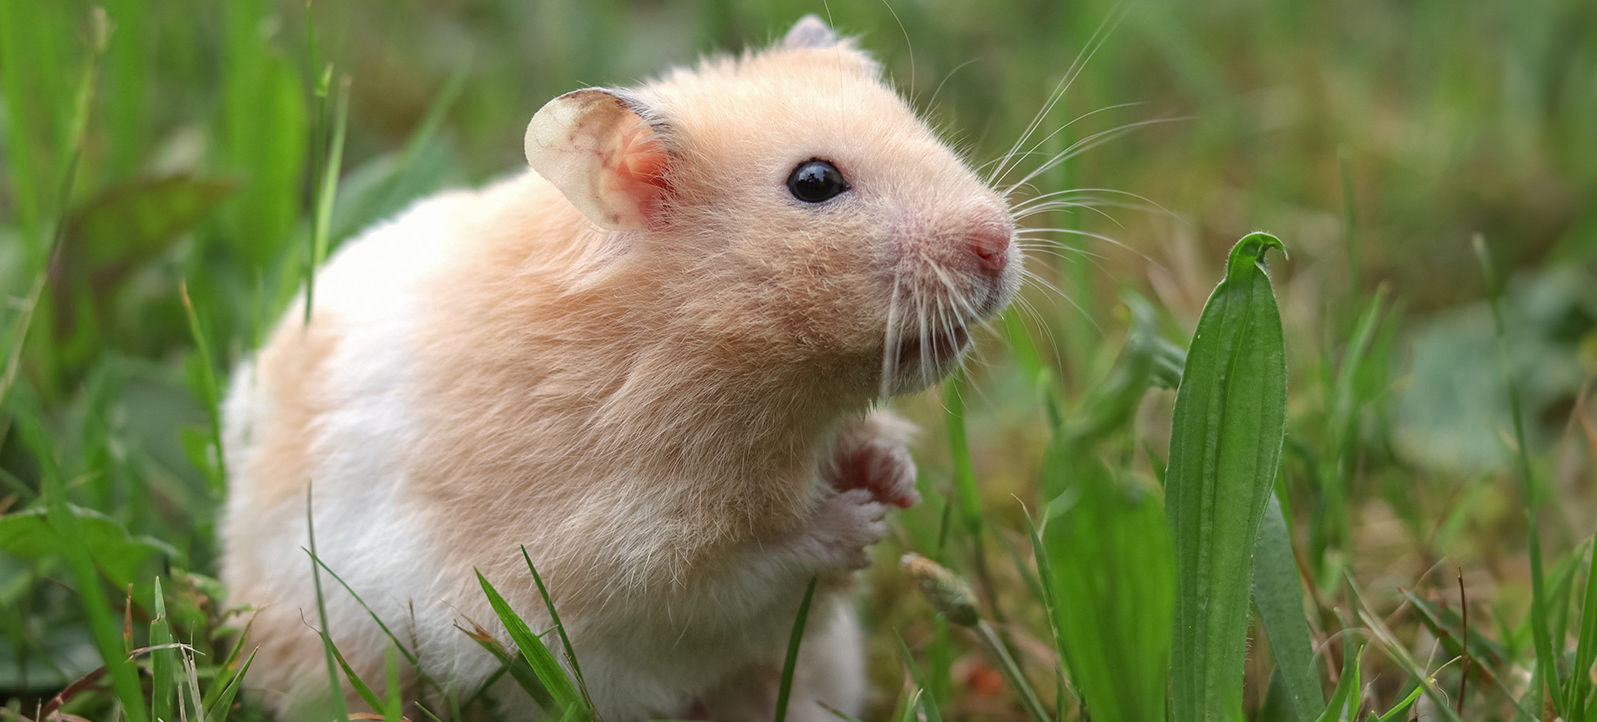 hamster in grass